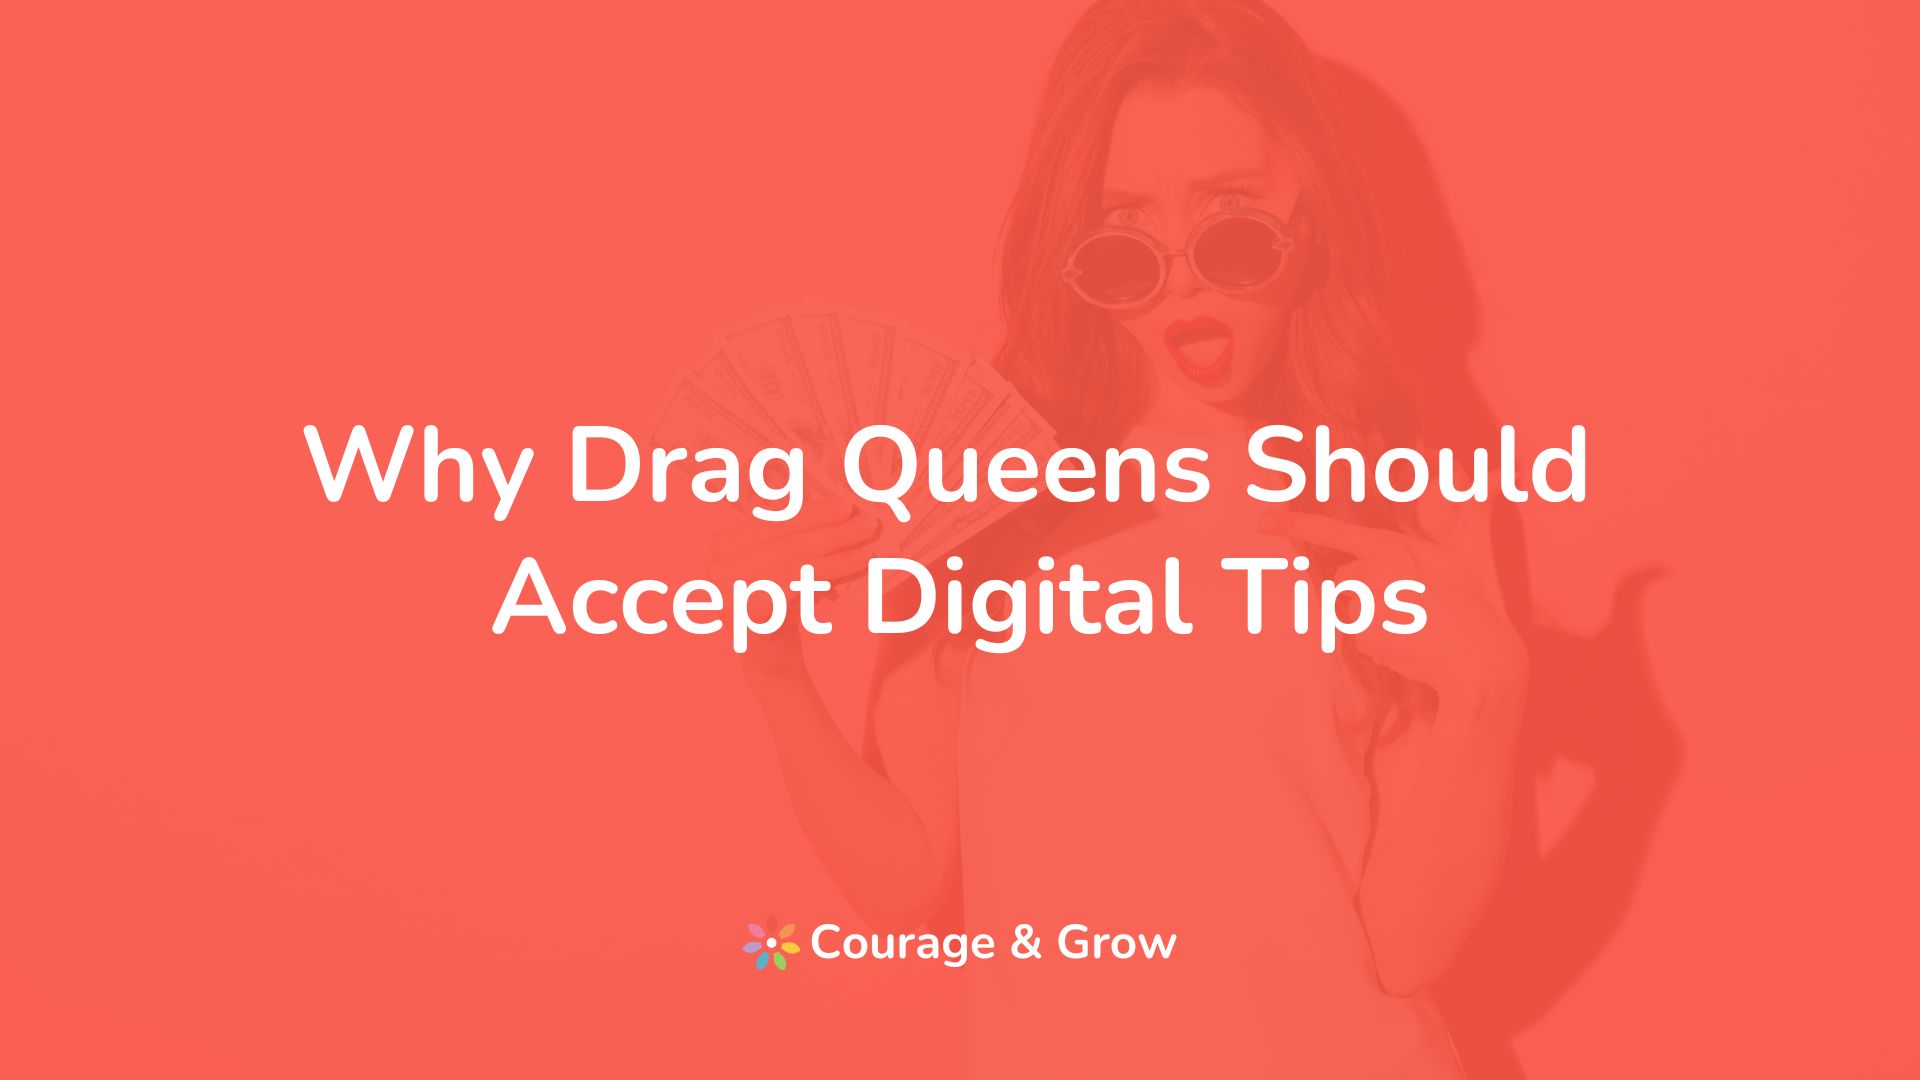 Accept Digital Tips